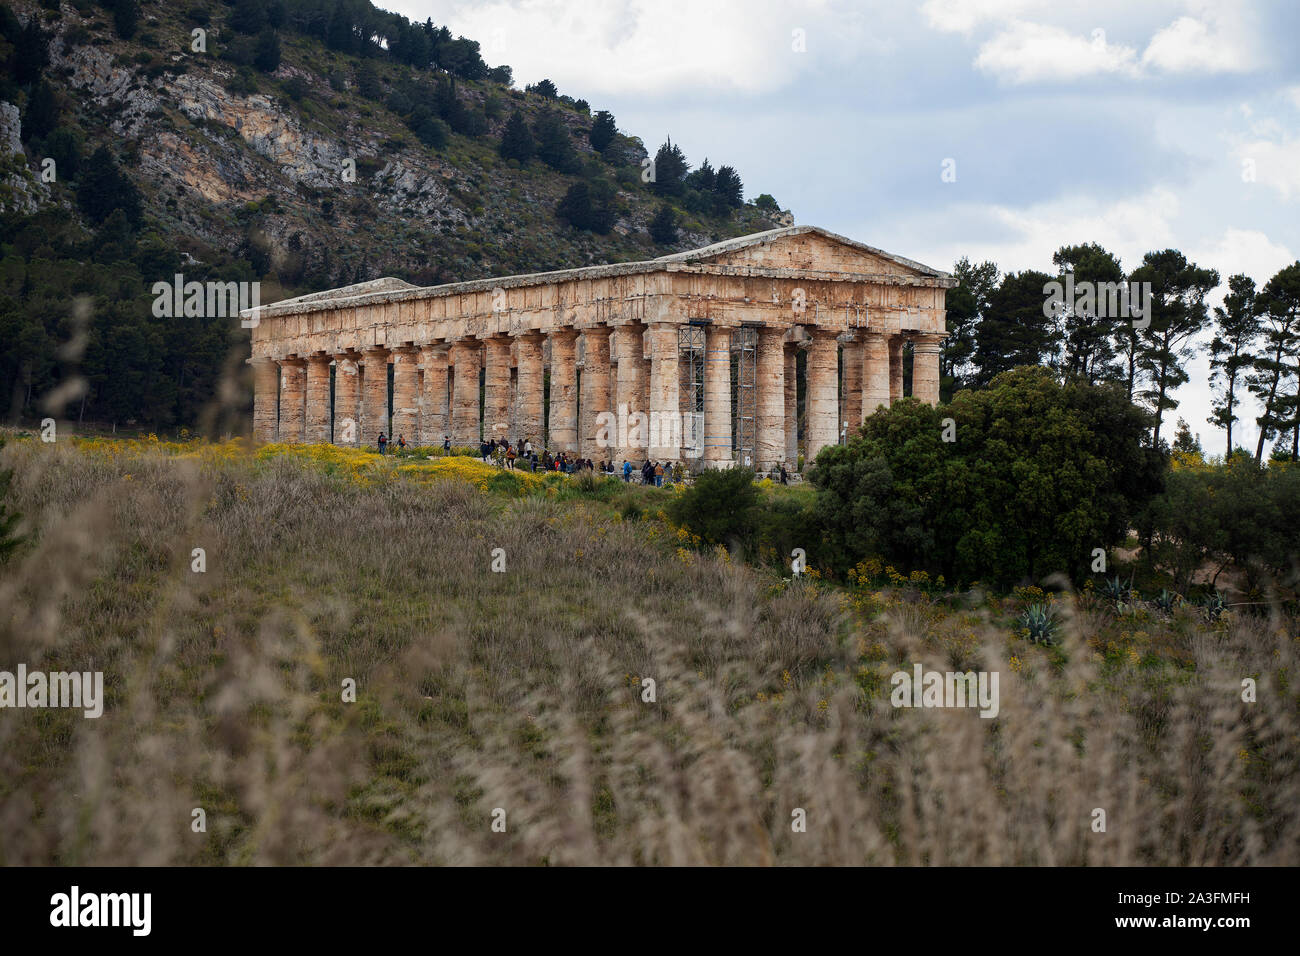 Vue sur le paysage sicilien vers l'ancien temple de Segesta, construit dans un style grec classique au début du quatrième siècle avant Jésus-Christ. Banque D'Images